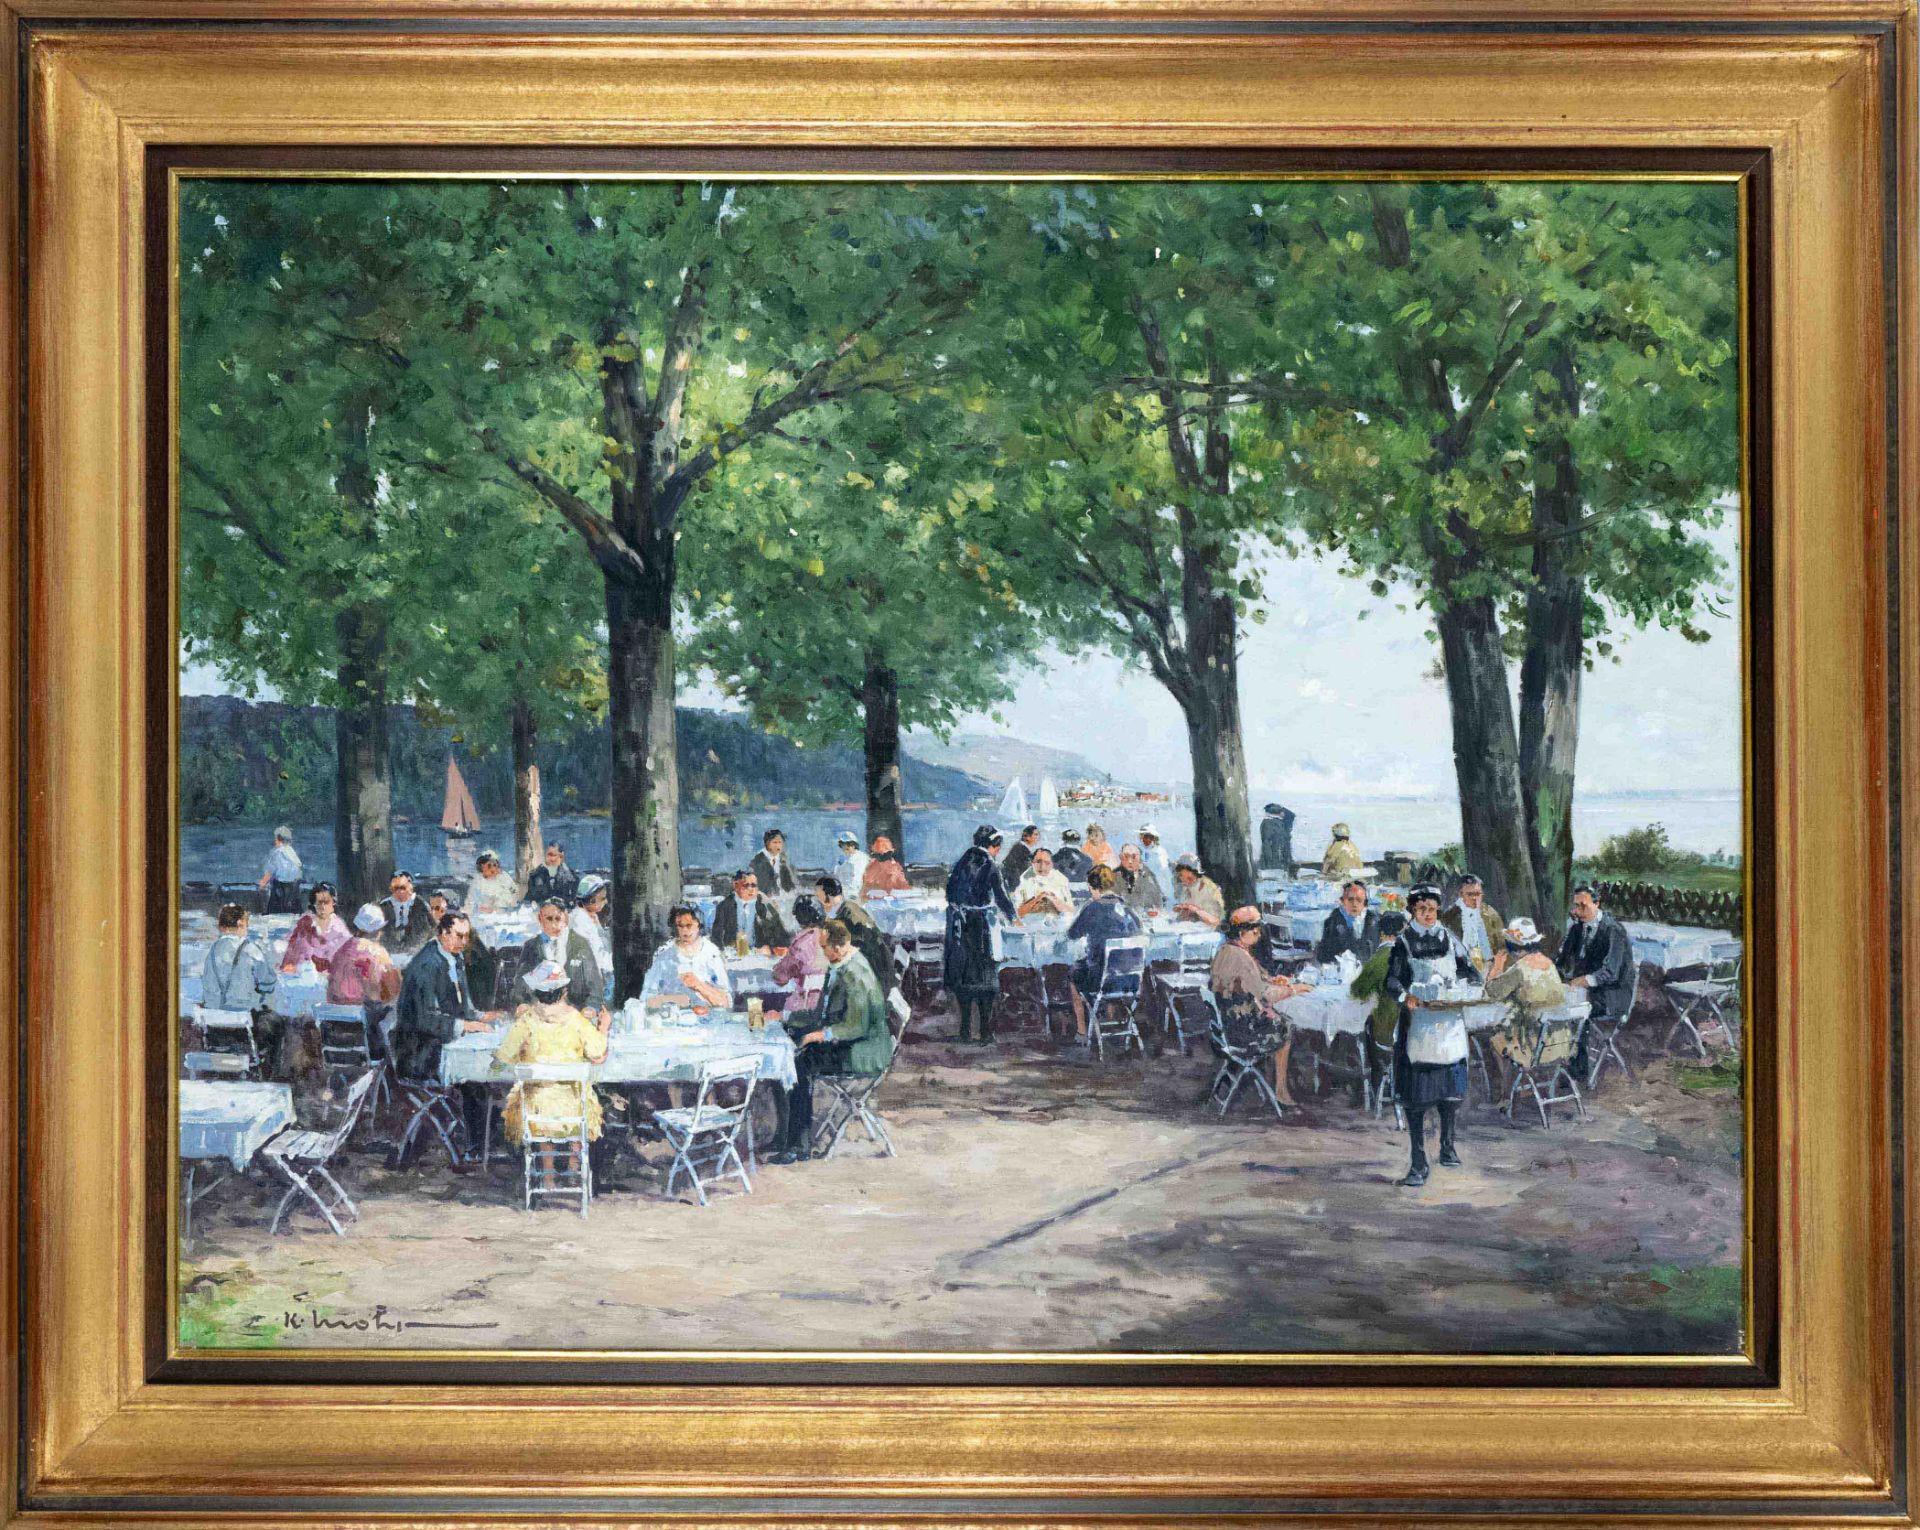 Karl Mohr (1922-2013), multi-figure, large beer garden scene on the lake shore, oil on canvas,